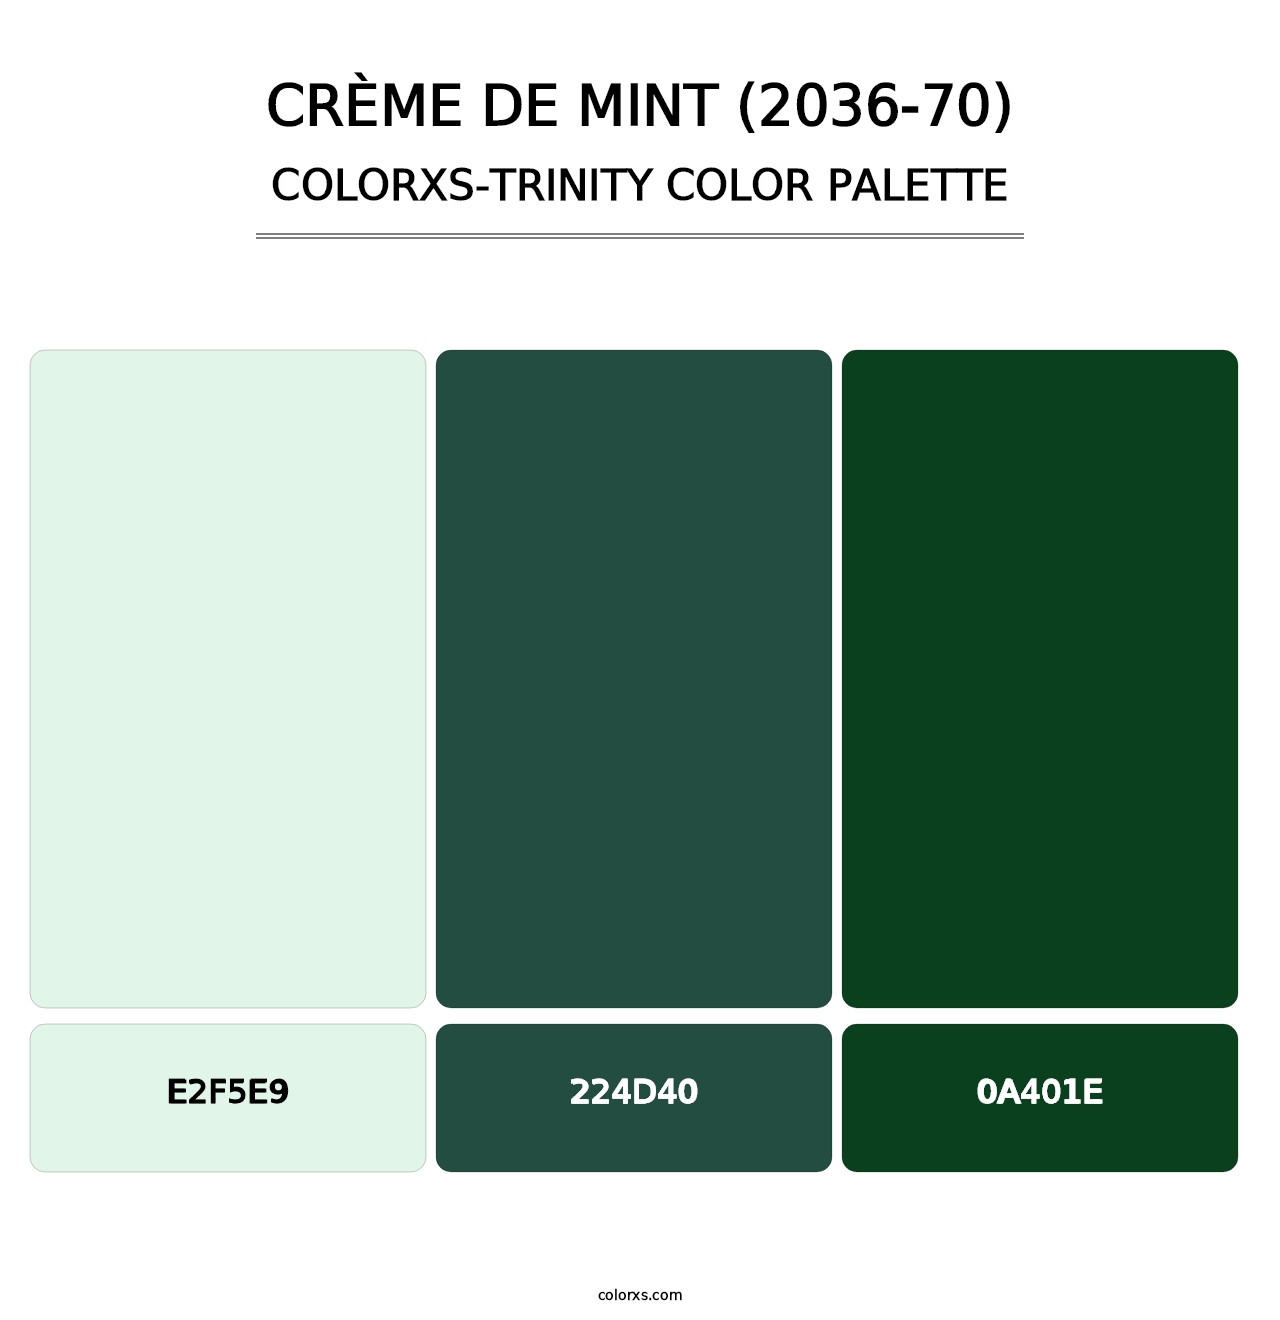 Crème de Mint (2036-70) - Colorxs Trinity Palette